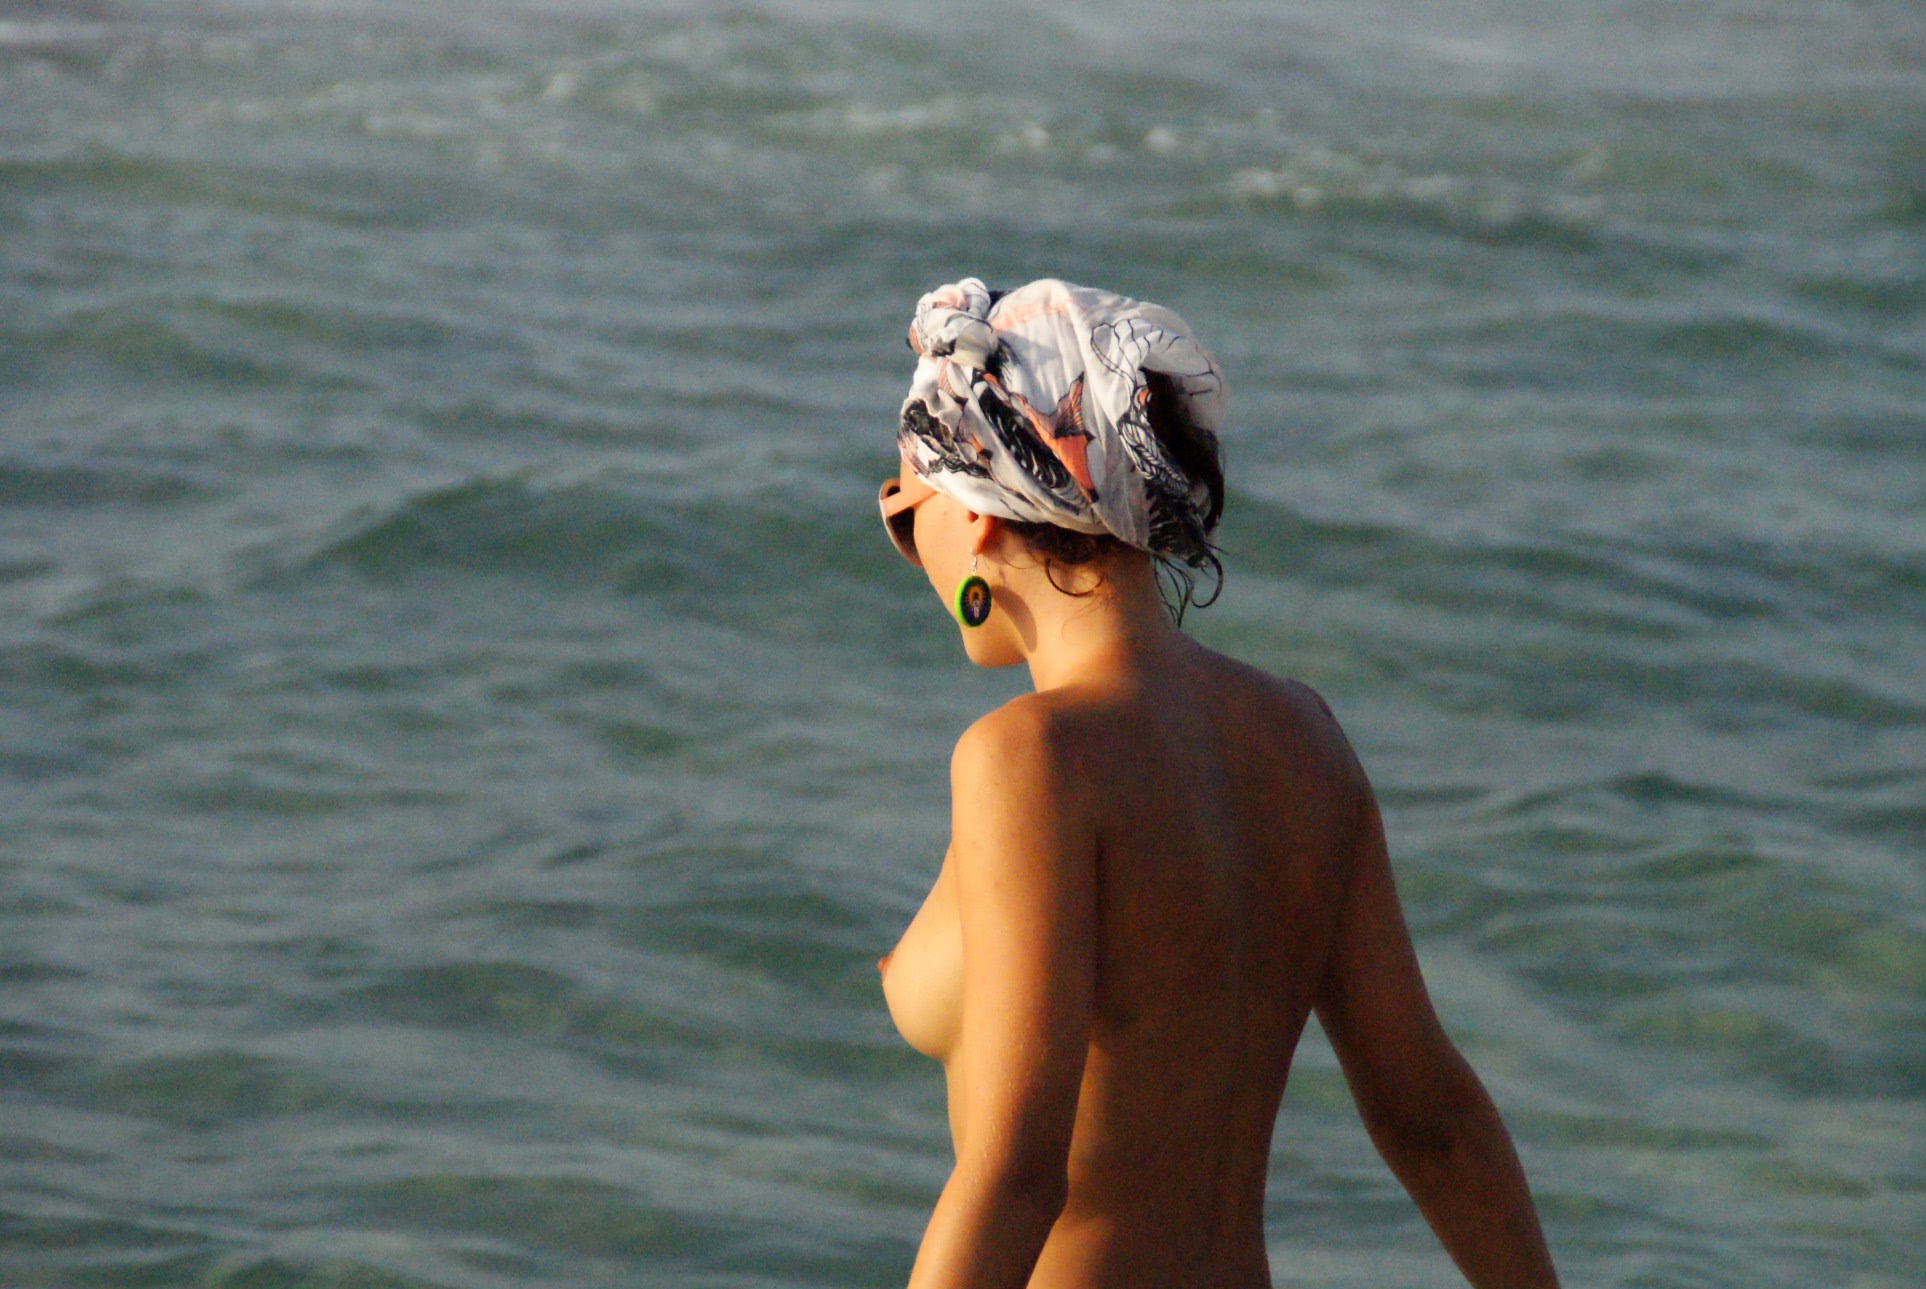 lawrence femei nud la plaja dezbracate